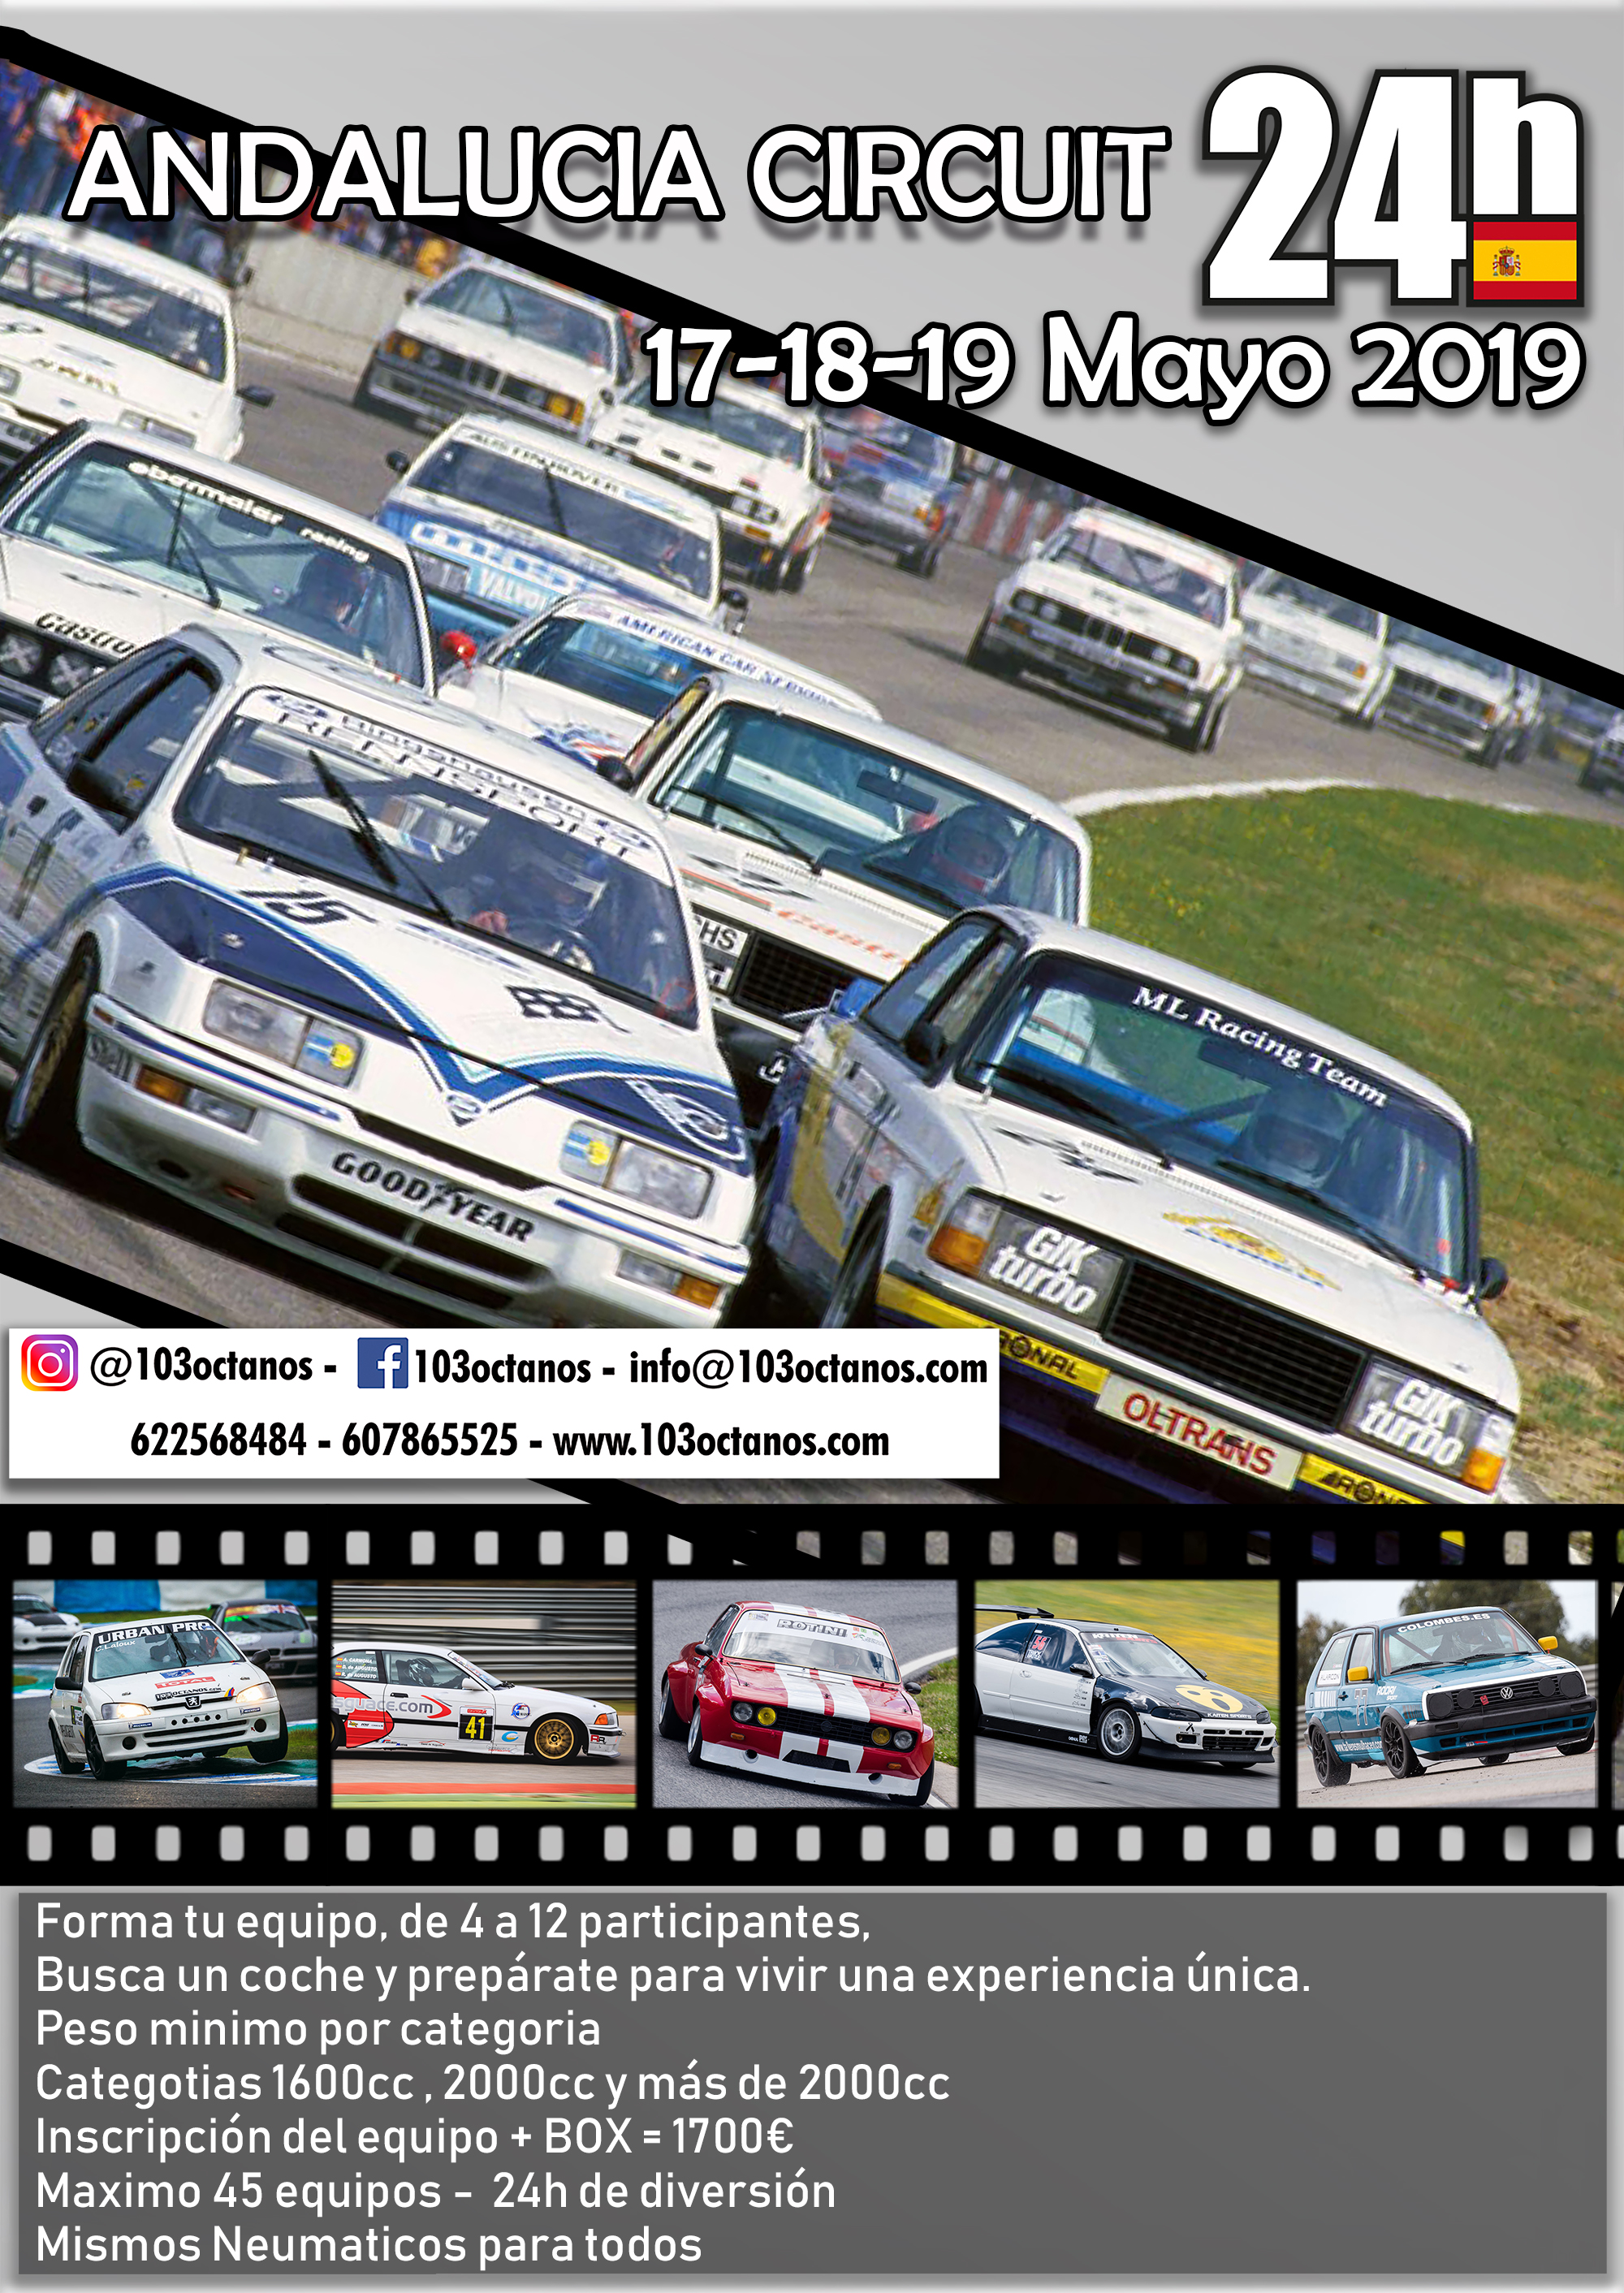 24 Horas Andalucía Circuit 17-18-19 de Mayo 2019